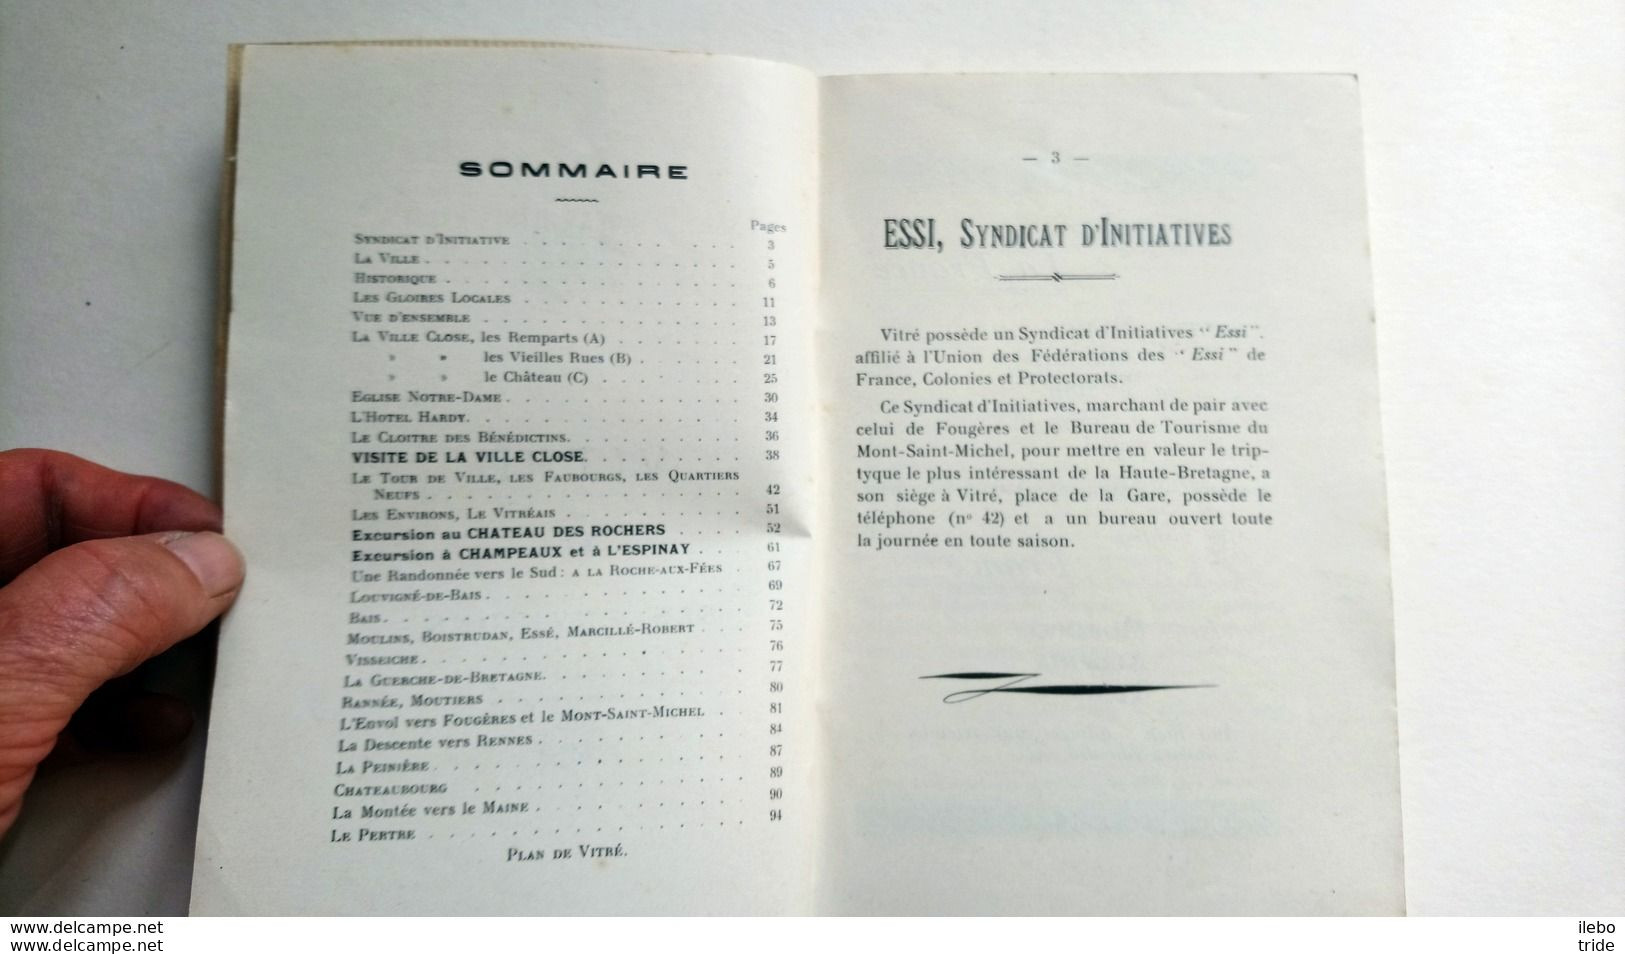 Vitré Et Ses Environs Guide Marcel Laillet 1933 Bretagne - Reiseprospekte